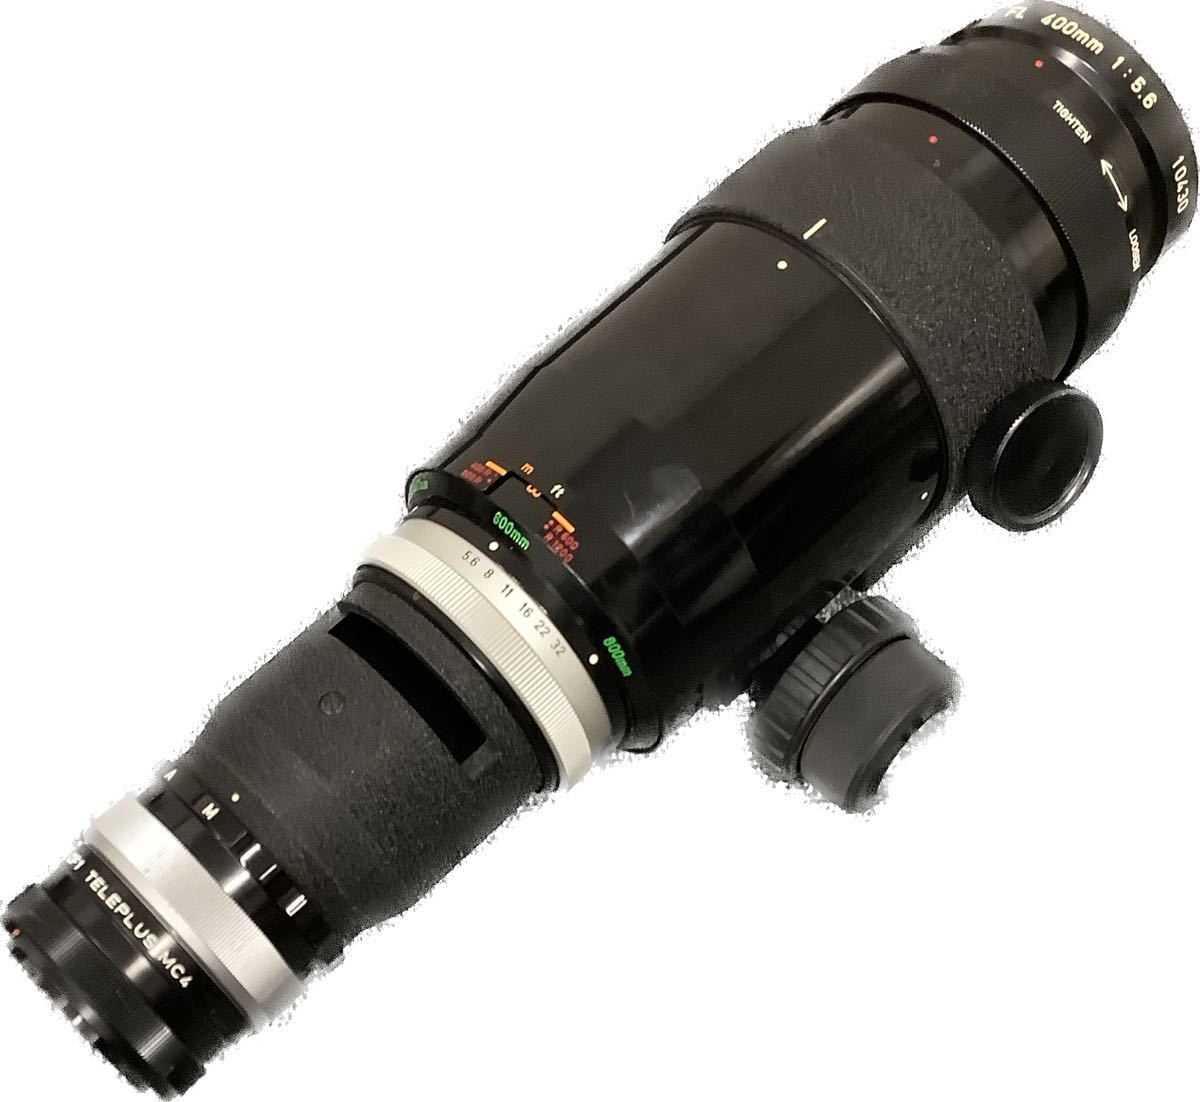 Canon LENS FL400mm1:5.6望遠レンズ【K1264】 visitversailles.org